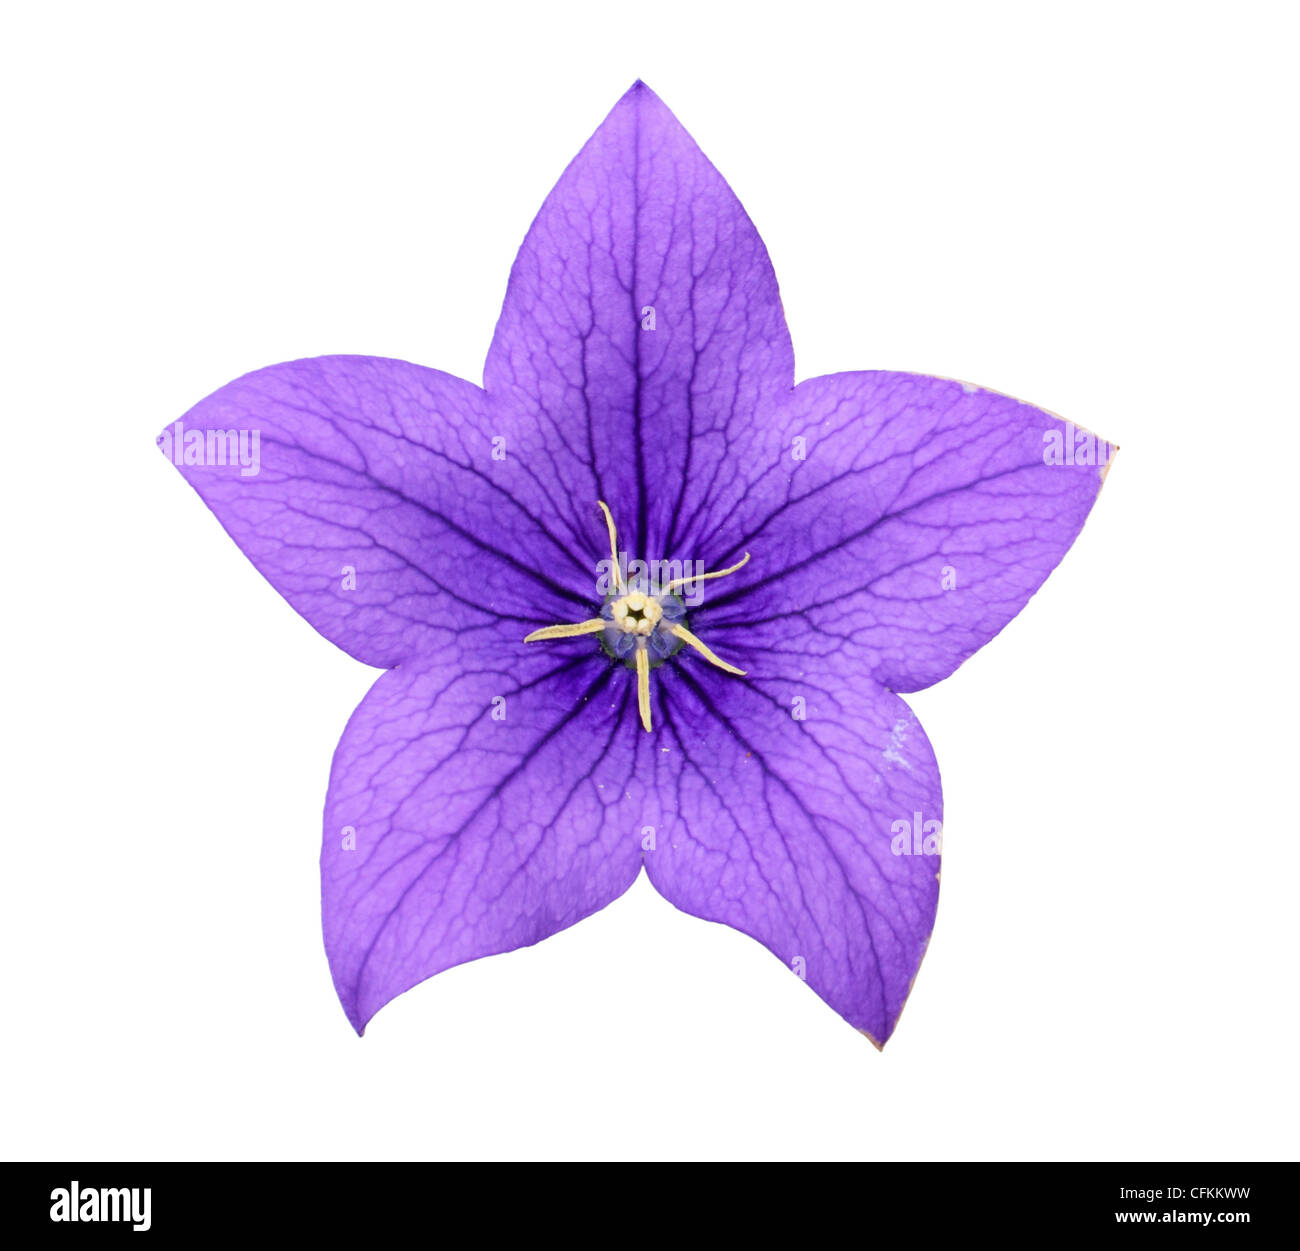 https://c8.alamy.com/comp/CFKKWW/bluebell-flower-campanula-isolated-on-white-CFKKWW.jpg